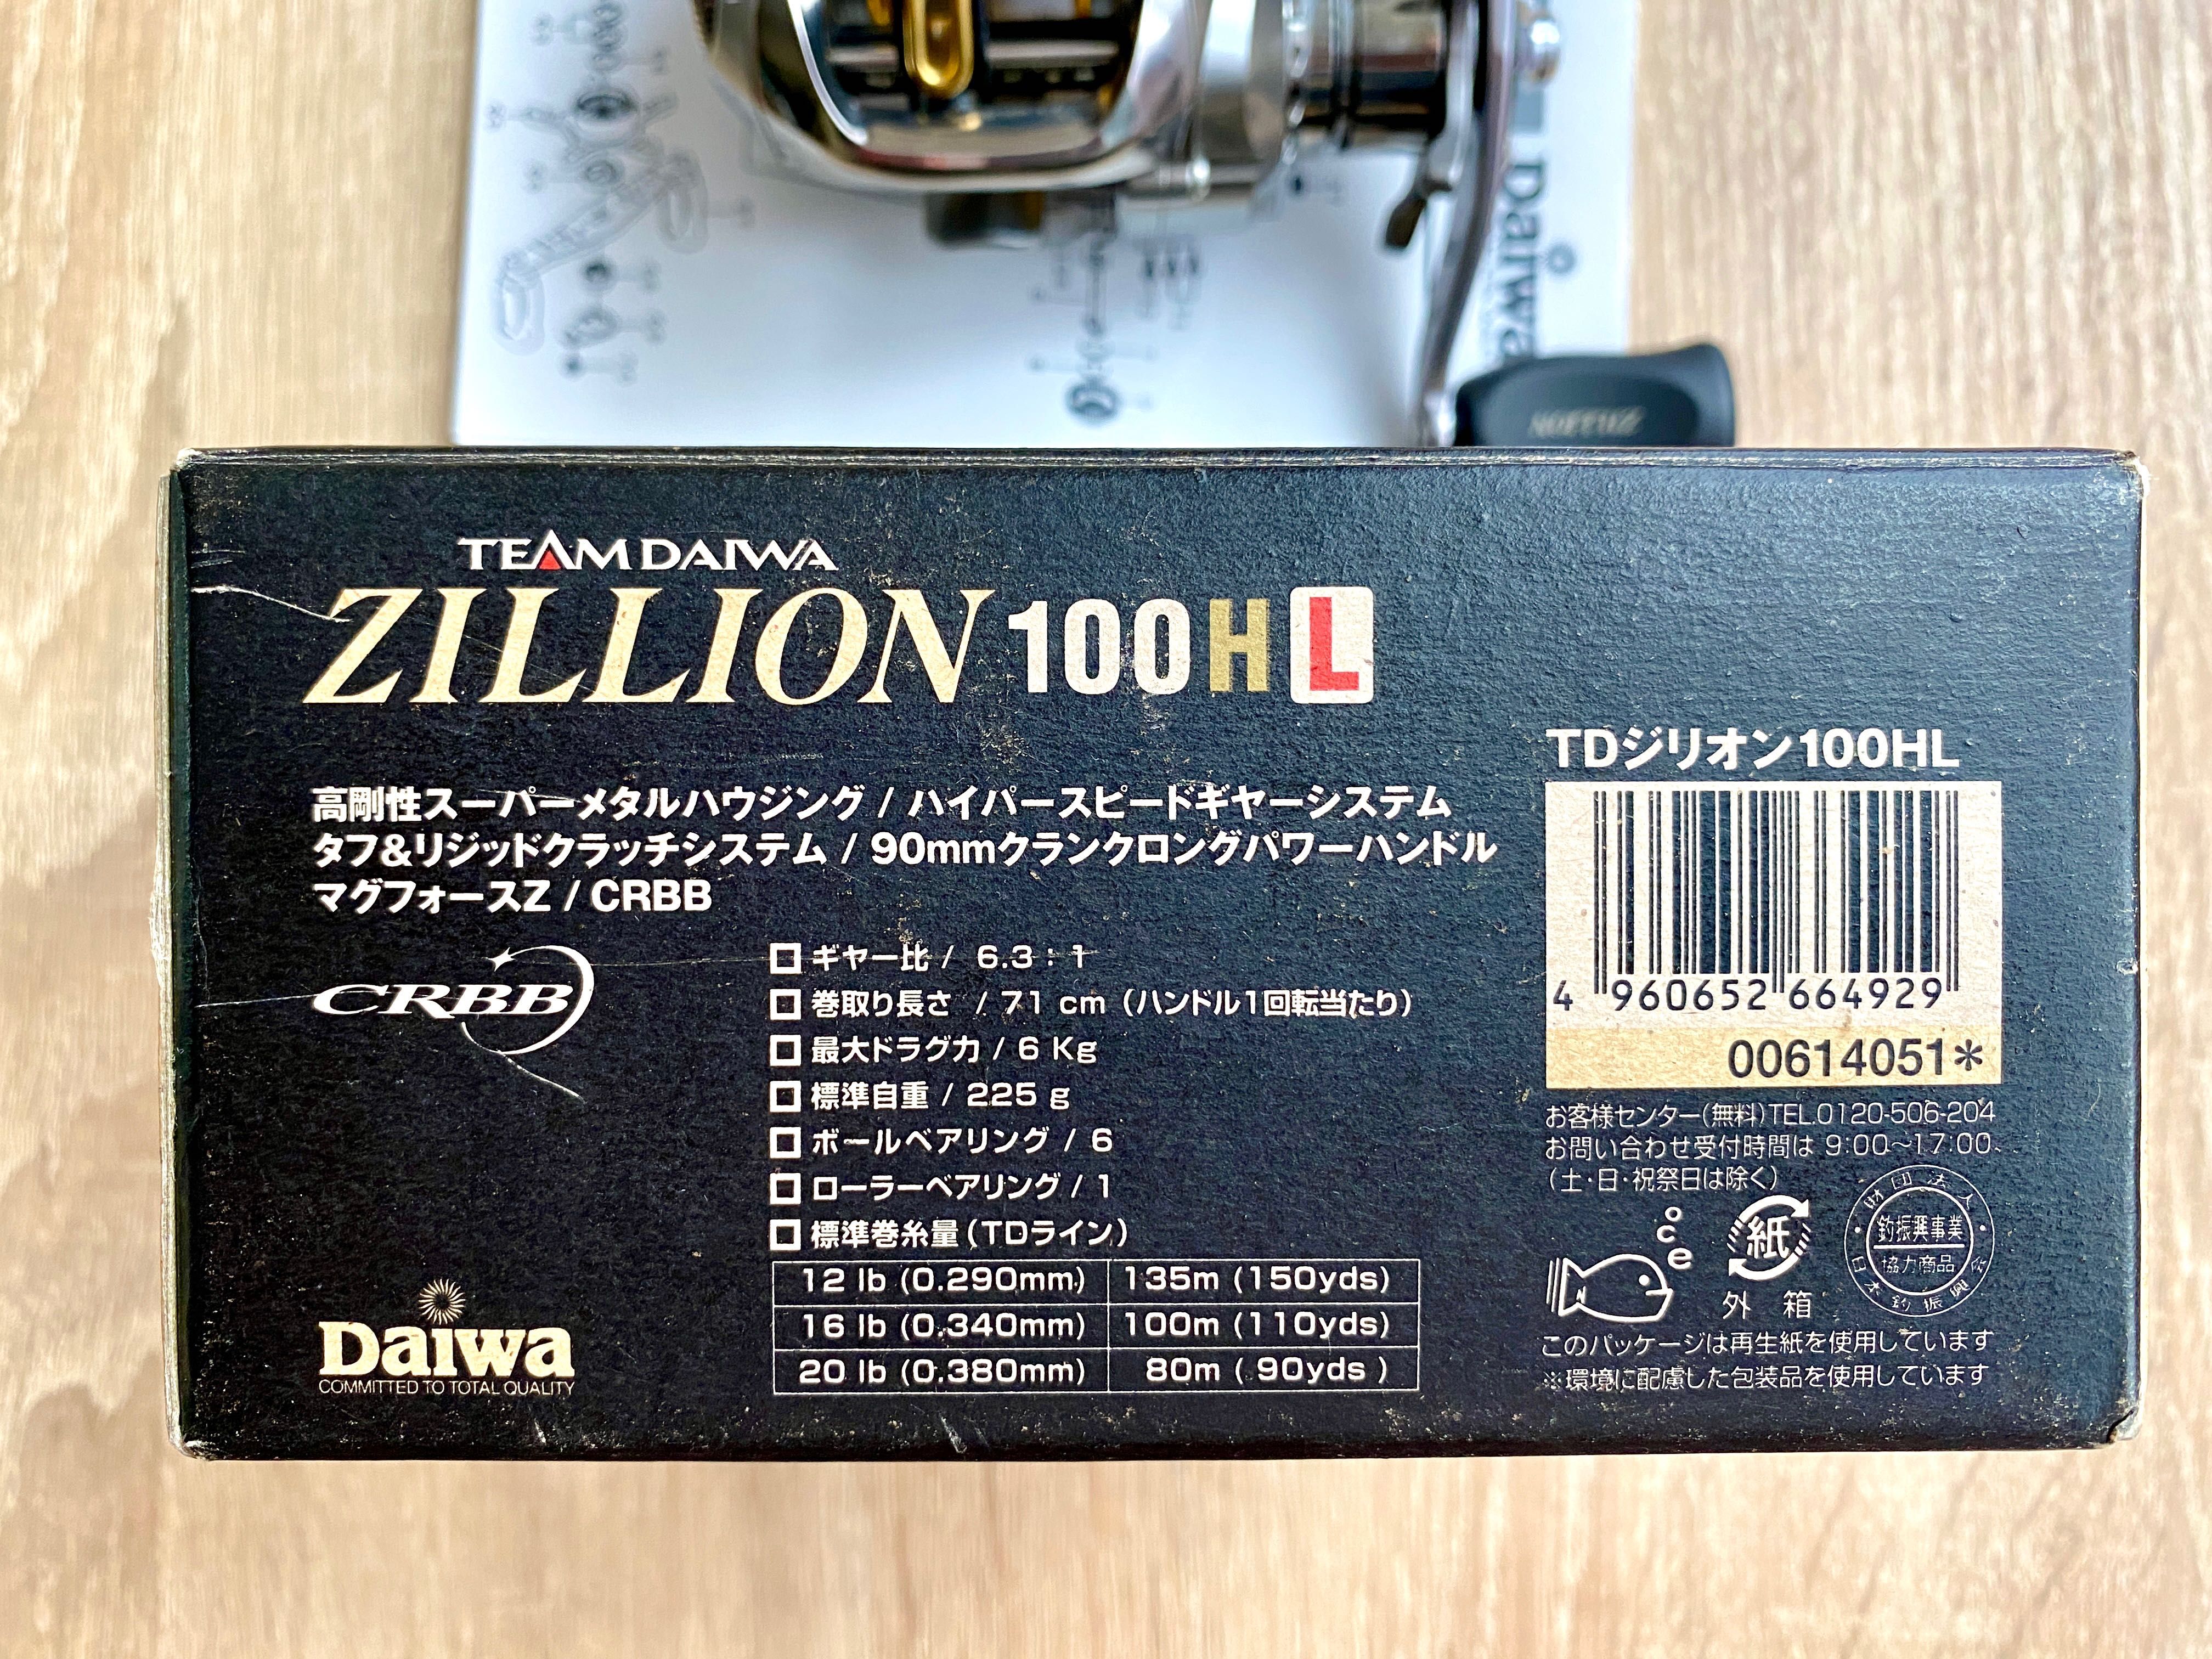 Топ мультипликаторная катушка - Daiwa TD Zillion 100HL - эксклюзив